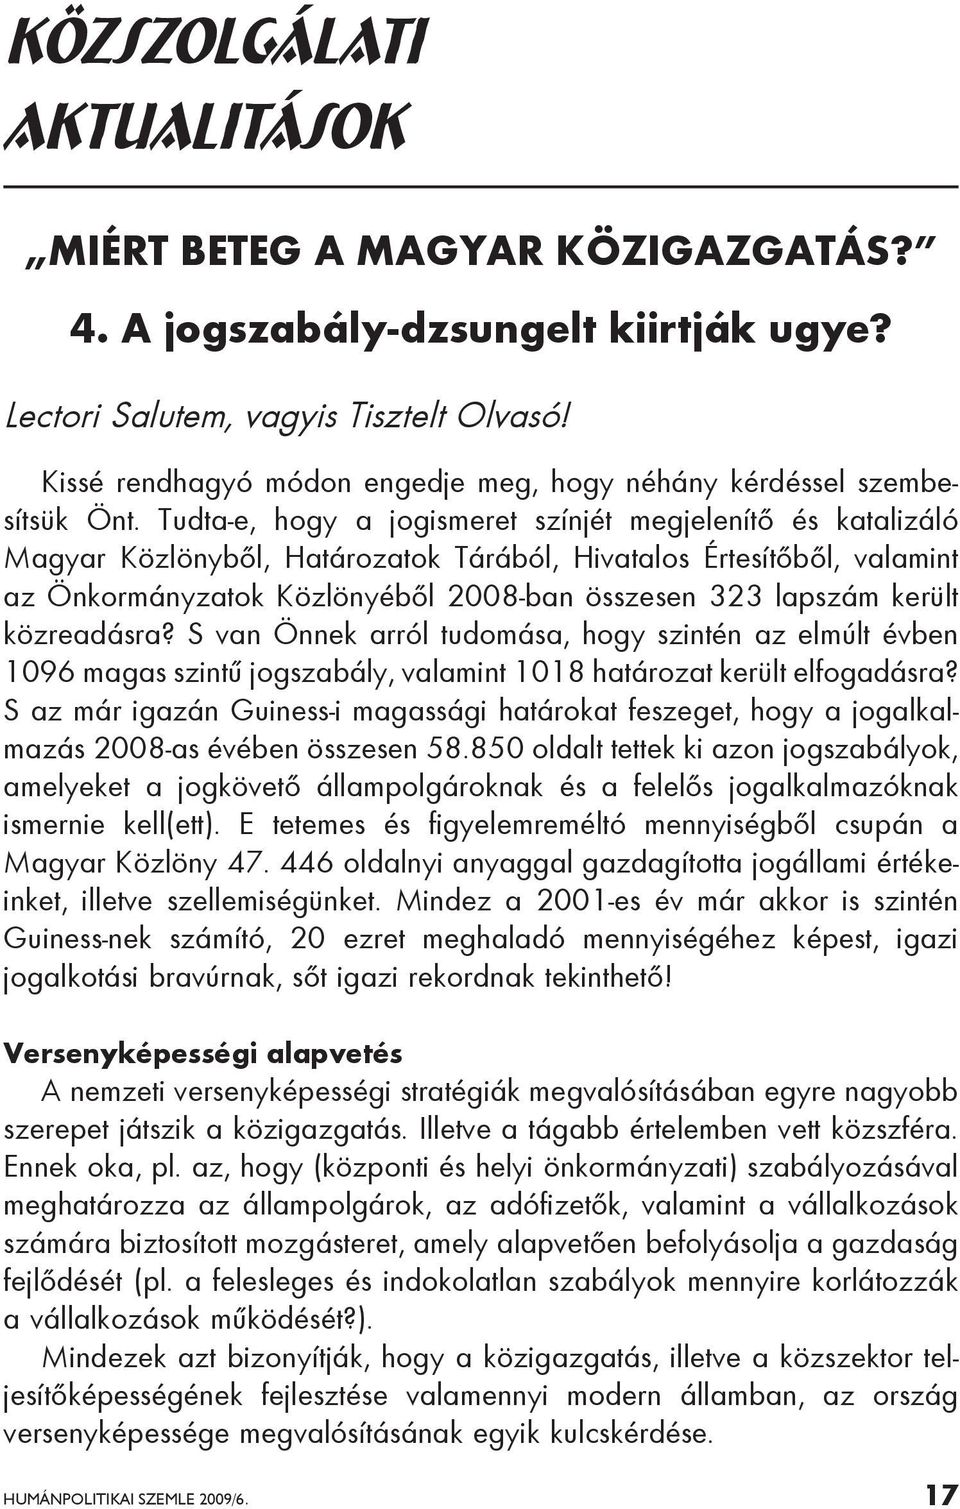 Tudta-e, hogy a jogismeret színjét megjelenítő és katalizáló Magyar Közlönyből, Határozatok Tárából, Hivatalos Értesítőből, valamint az Önkormányzatok Közlönyéből 2008-ban összesen 323 lapszám került